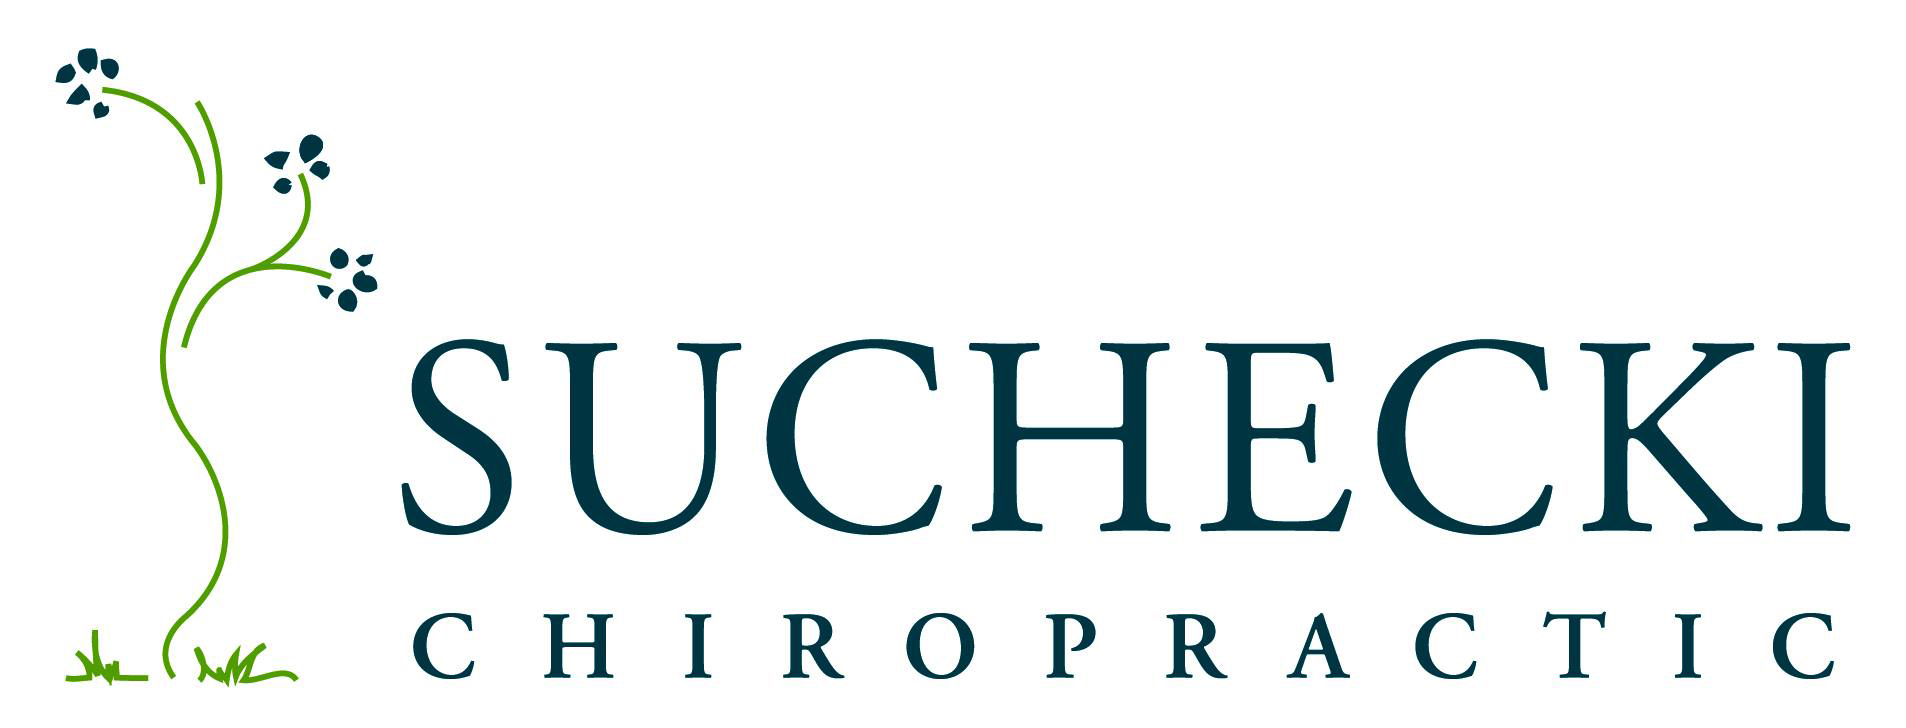 Suchecki Chiropractic